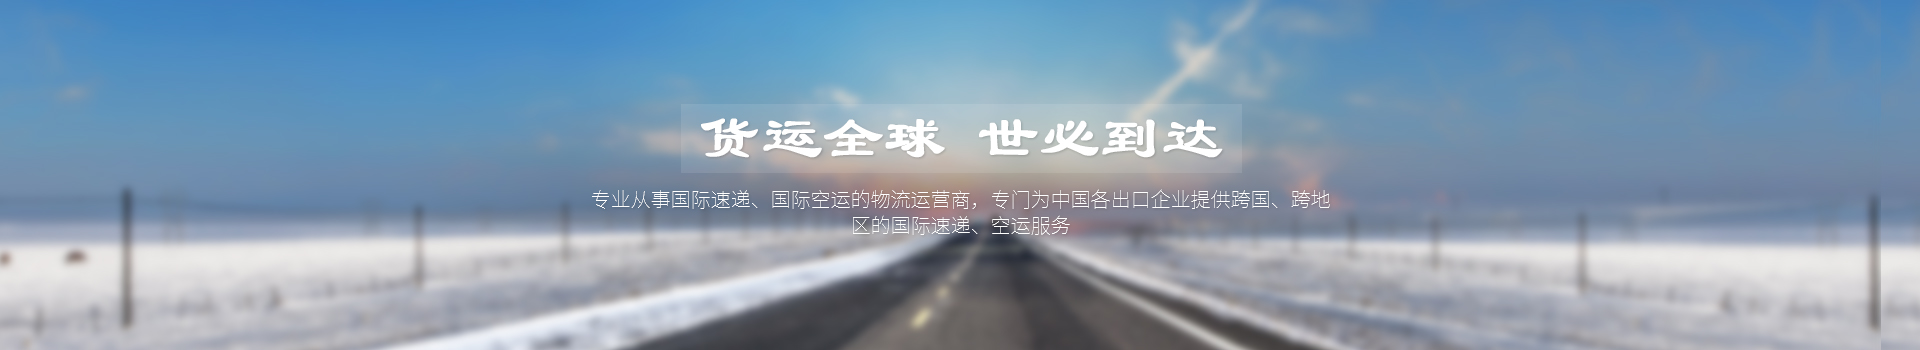 重庆世界物流纽带园区5亿元债券付息 利率58%